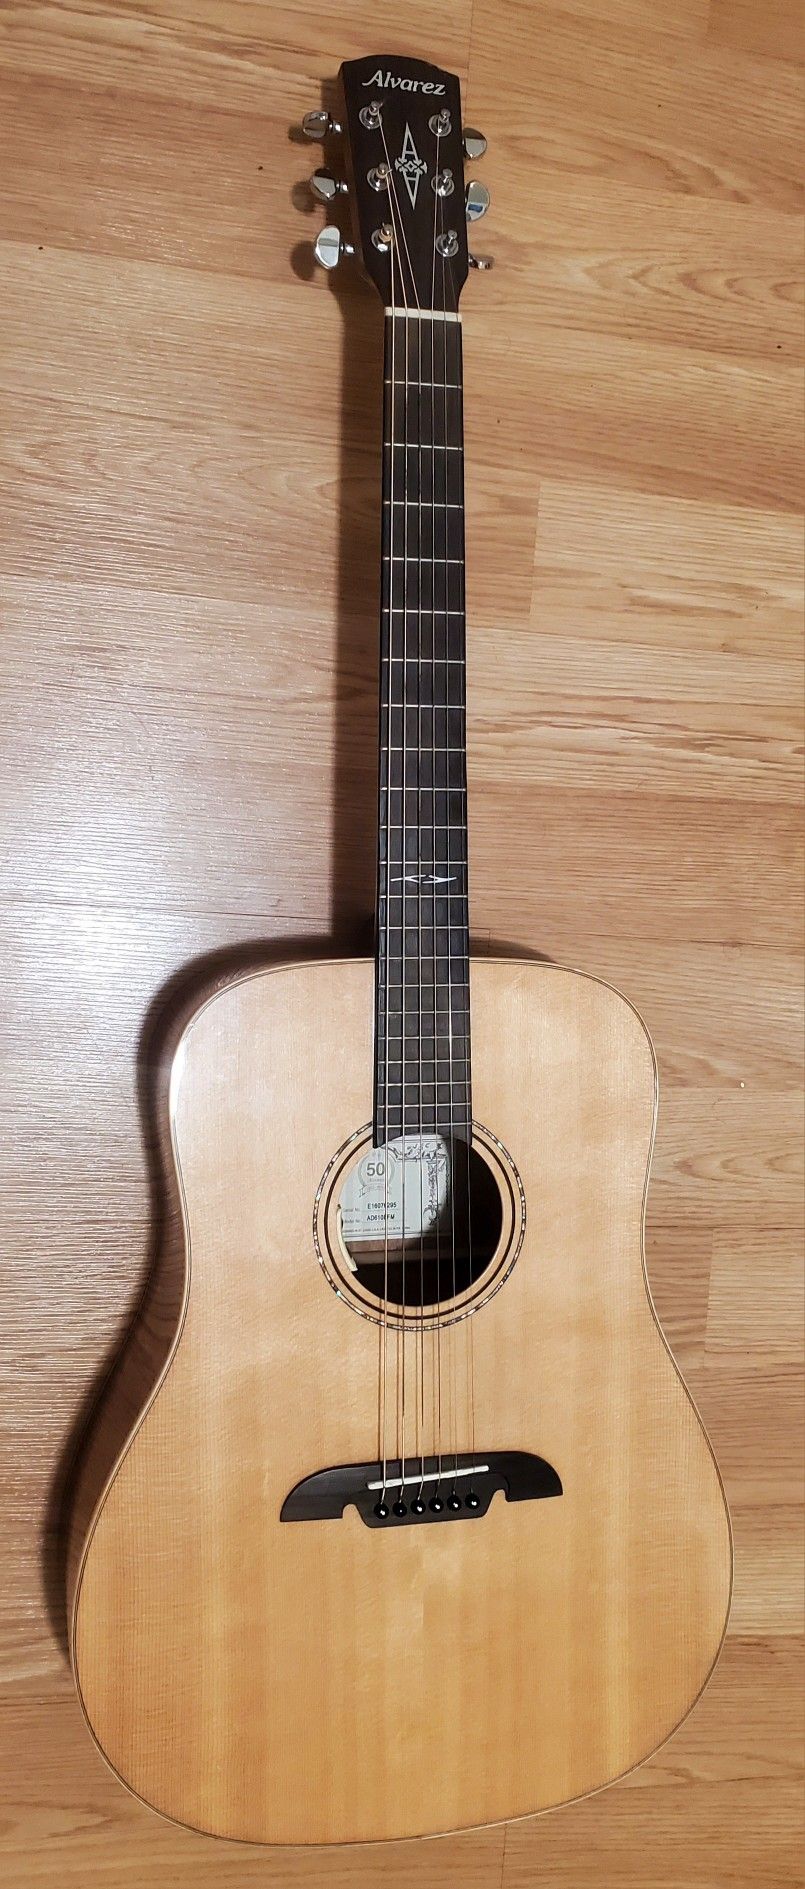 Alvarez 610 Acoustic Guitar 